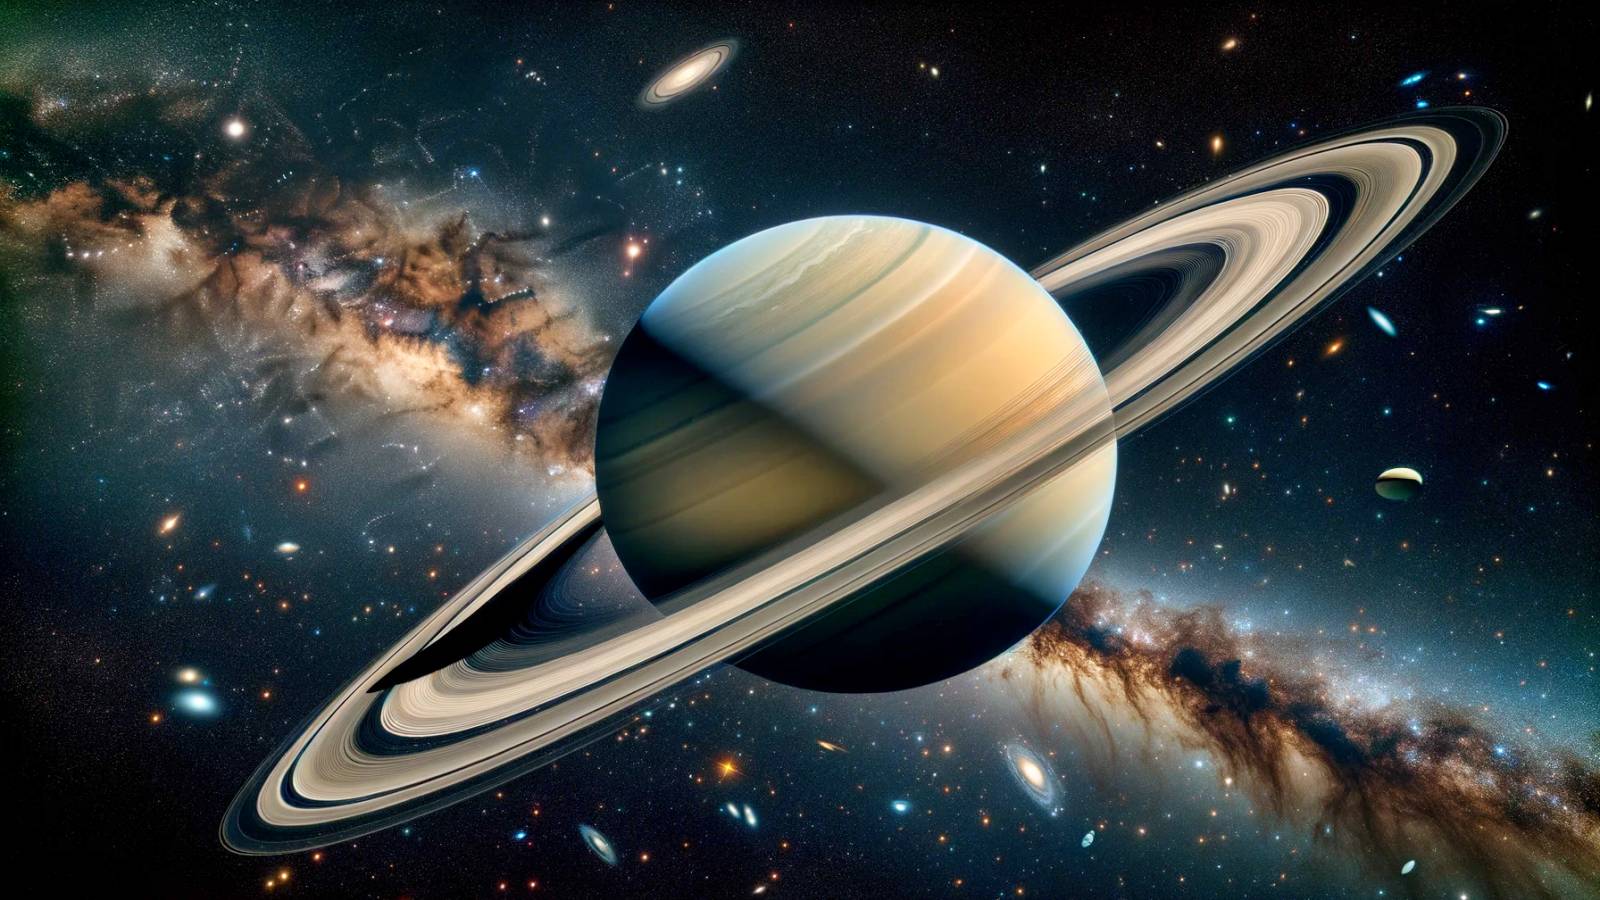 Il pianeta Saturno: i misteri degli anelli rivelati dalle immagini di Cassini